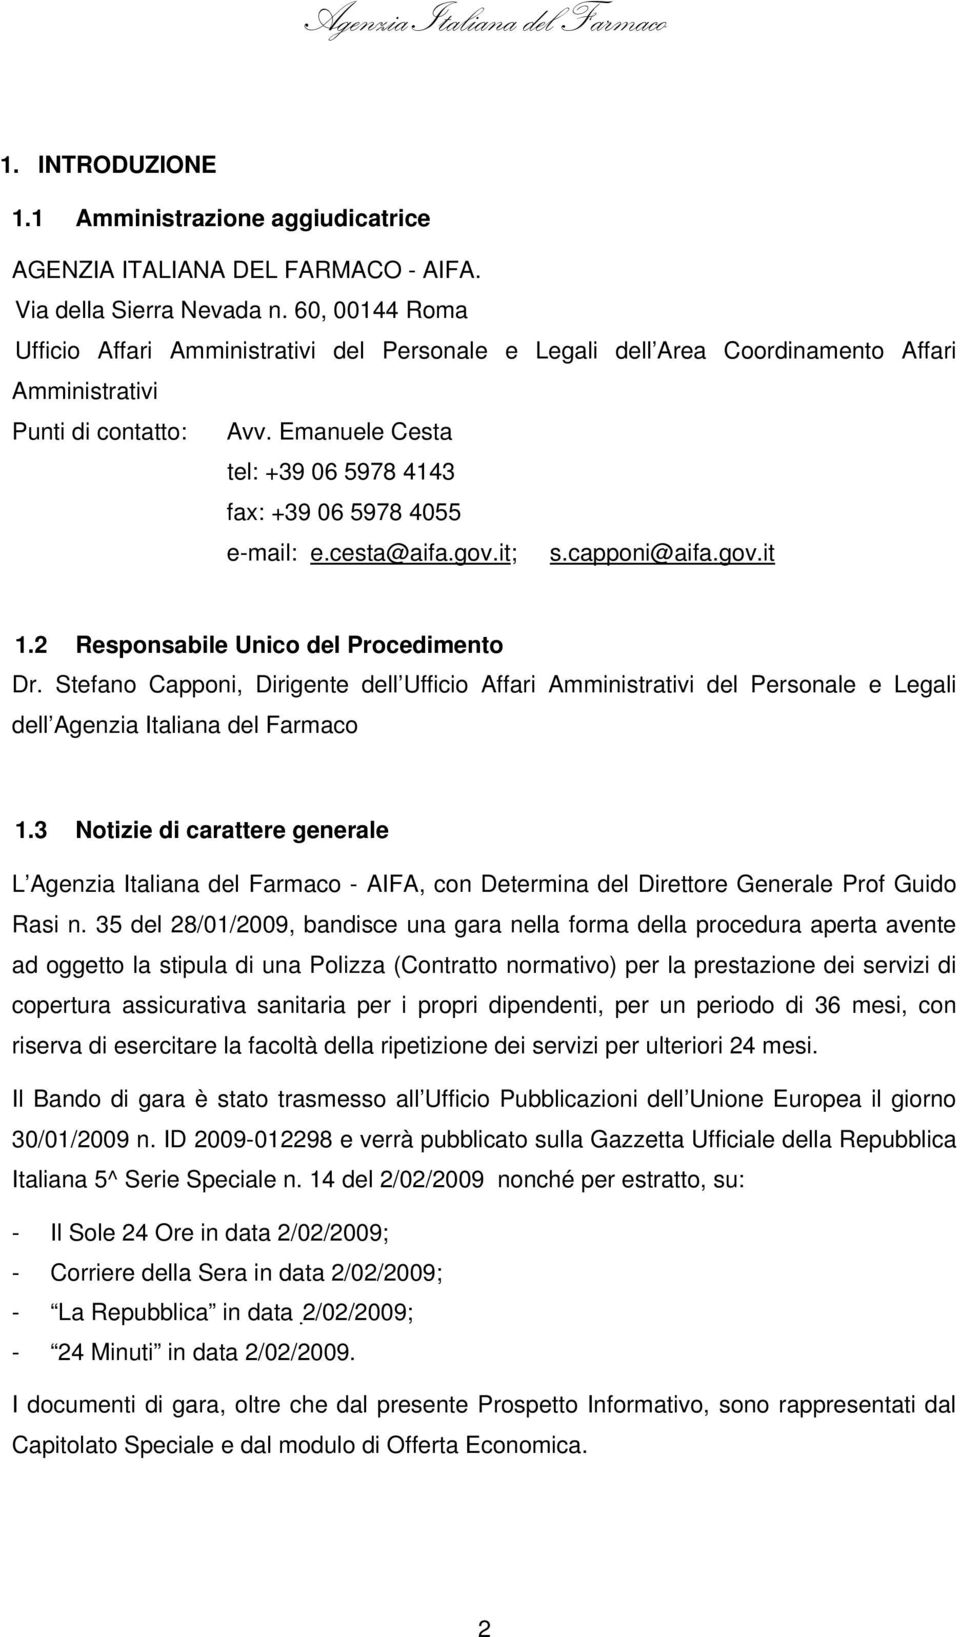 Emanuele Cesta tel: +39 06 5978 4143 fax: +39 06 5978 4055 e-mail: e.cesta@aifa.gov.it; s.capponi@aifa.gov.it 1.2 Responsabile Unico del Procedimento Dr.